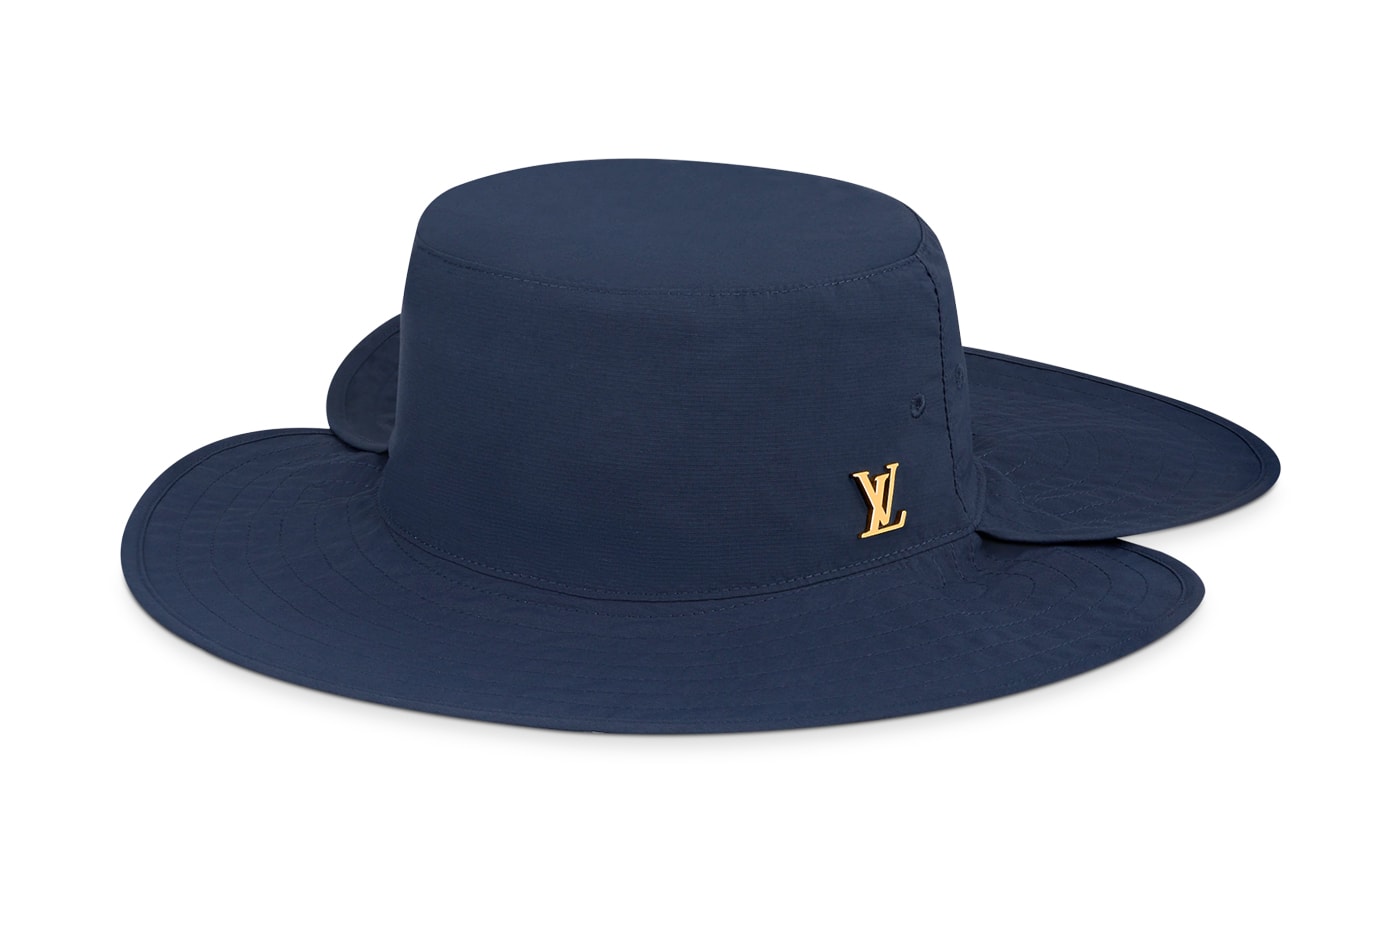 ルイ・ヴィトンが9万円のハイキングハットをリリース Louis Vuitton Drops $750 USD Hat for Hiking